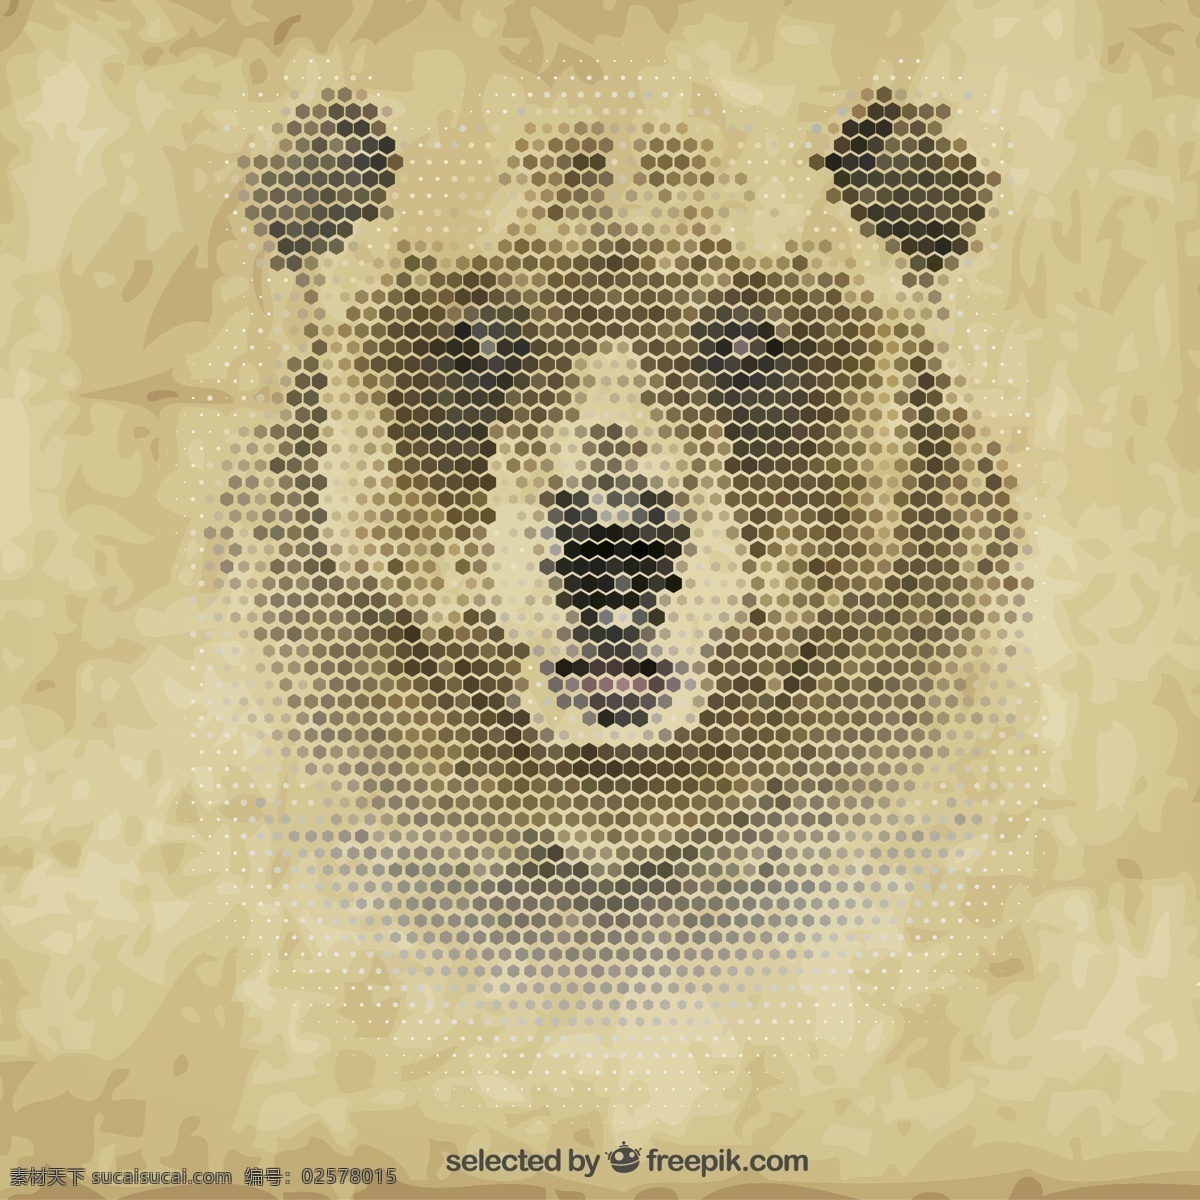 棕熊 像素 头像 六边形 动物 蜂窝形 矢量图 矢量 高清图片